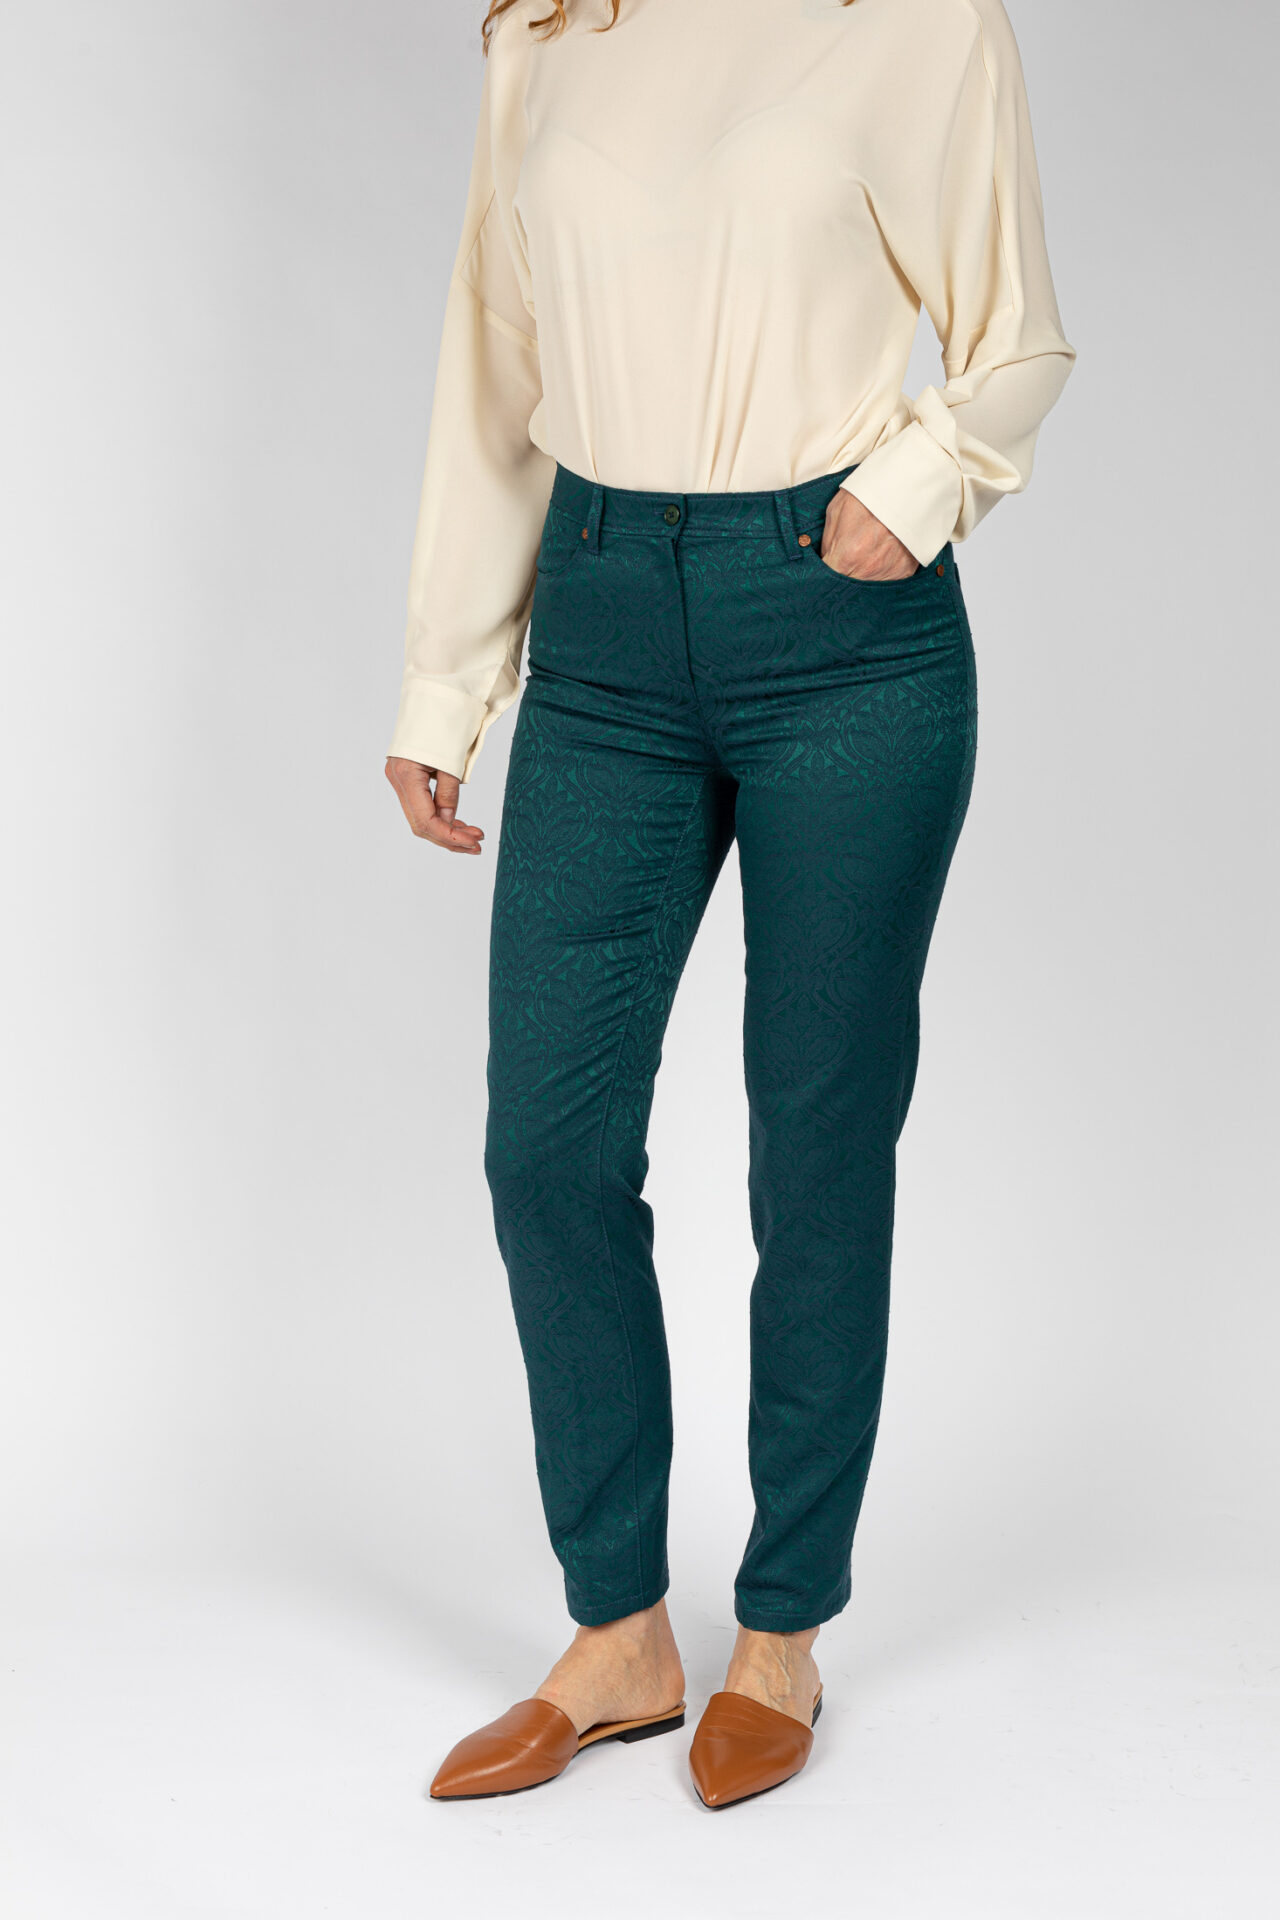 Pantaloni linea Jeans tessuto jacquard disegno fiore colore verde P19950GT - 3